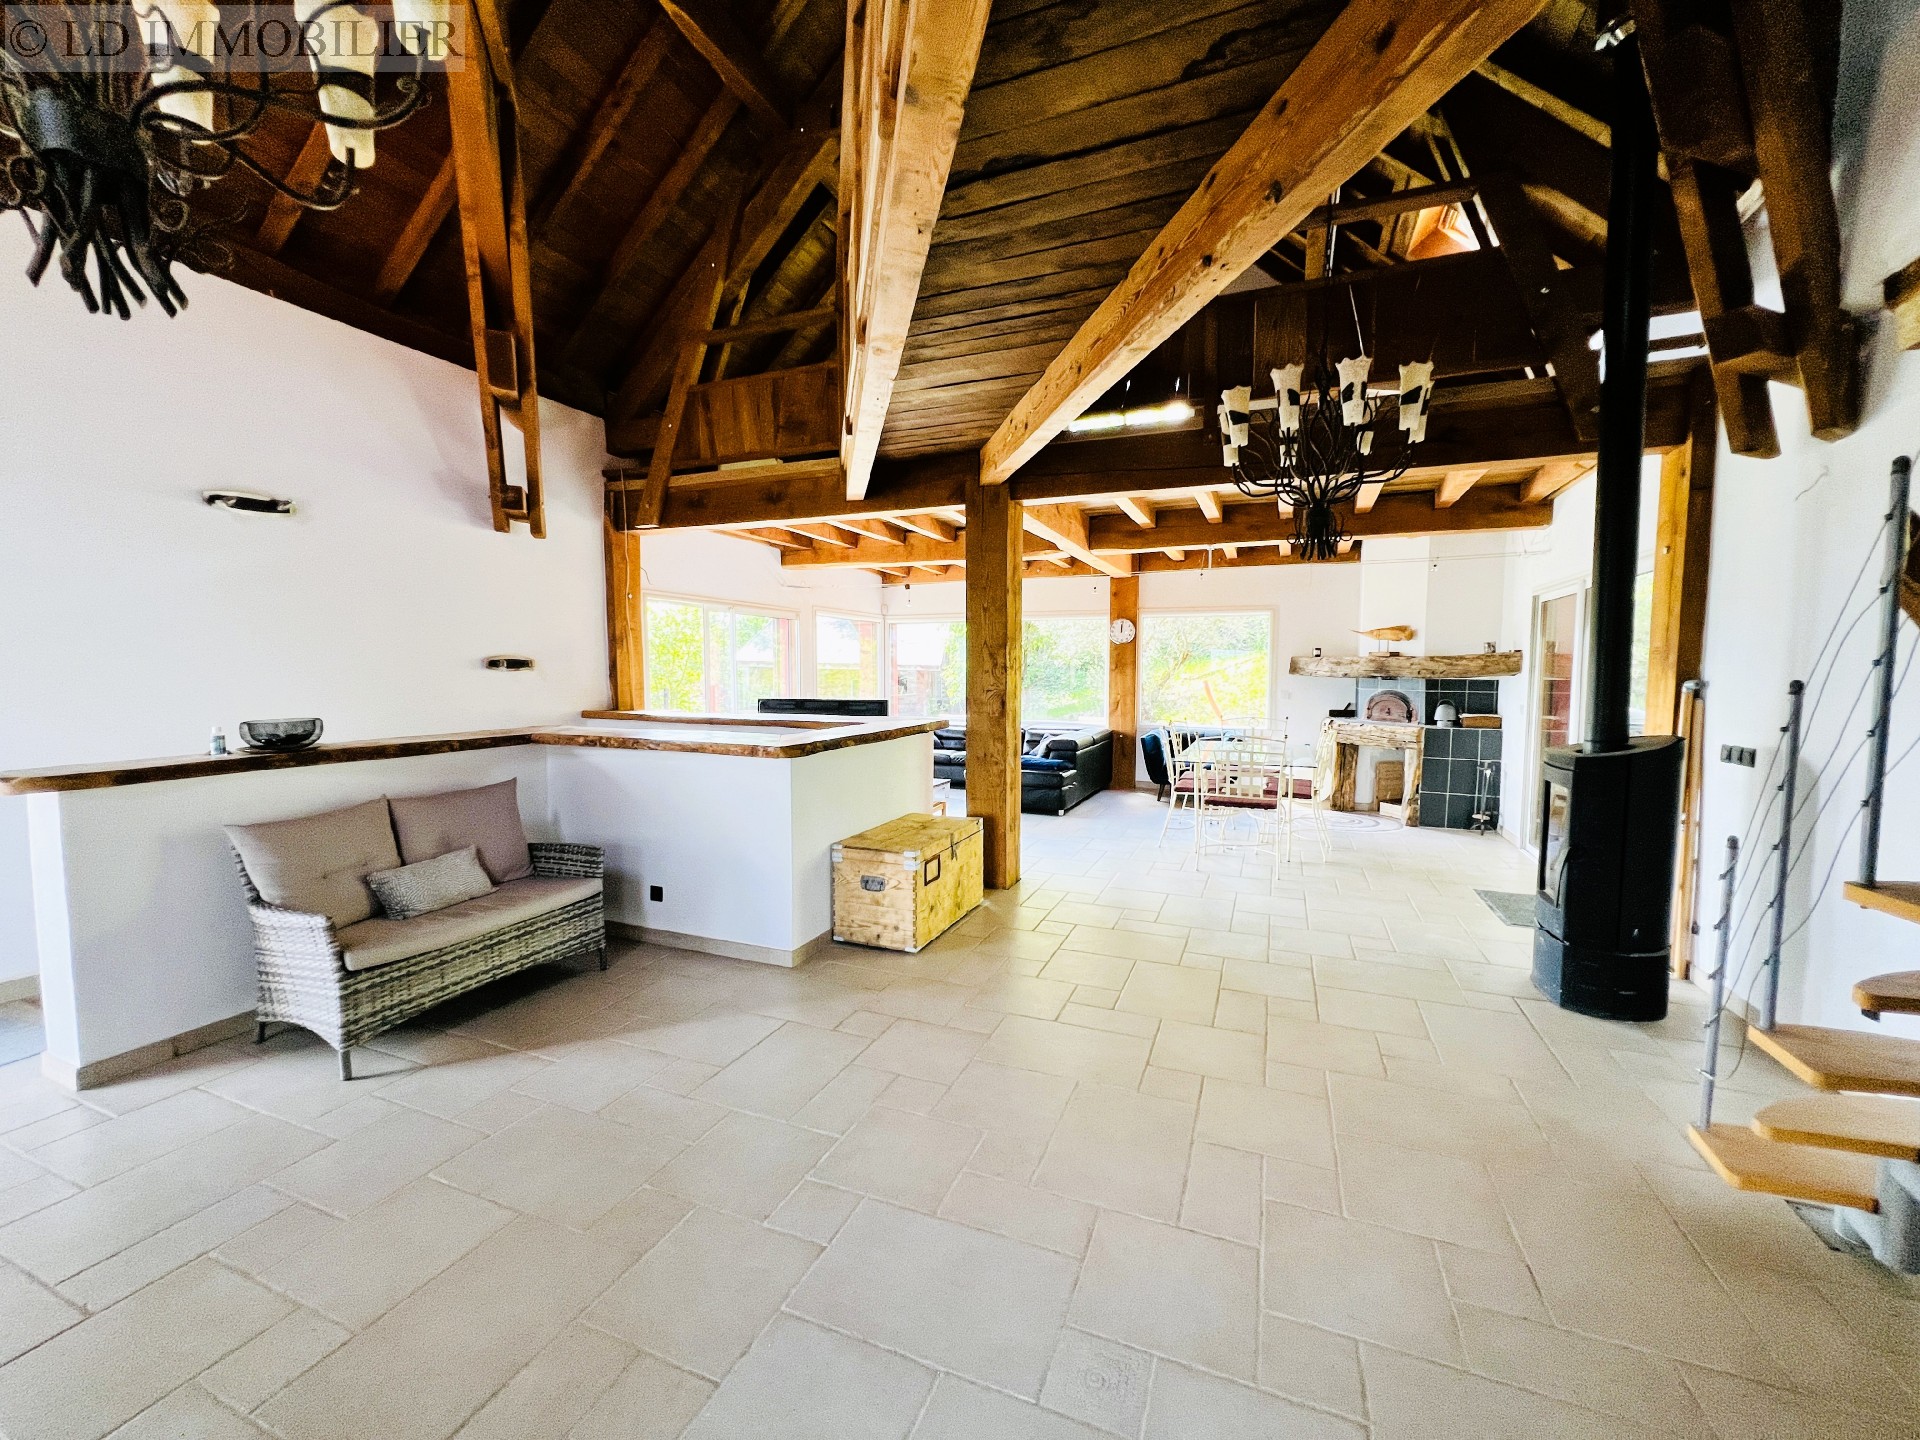 Vente maison  villa - ST BALDOPH 275 m², 8 pièces